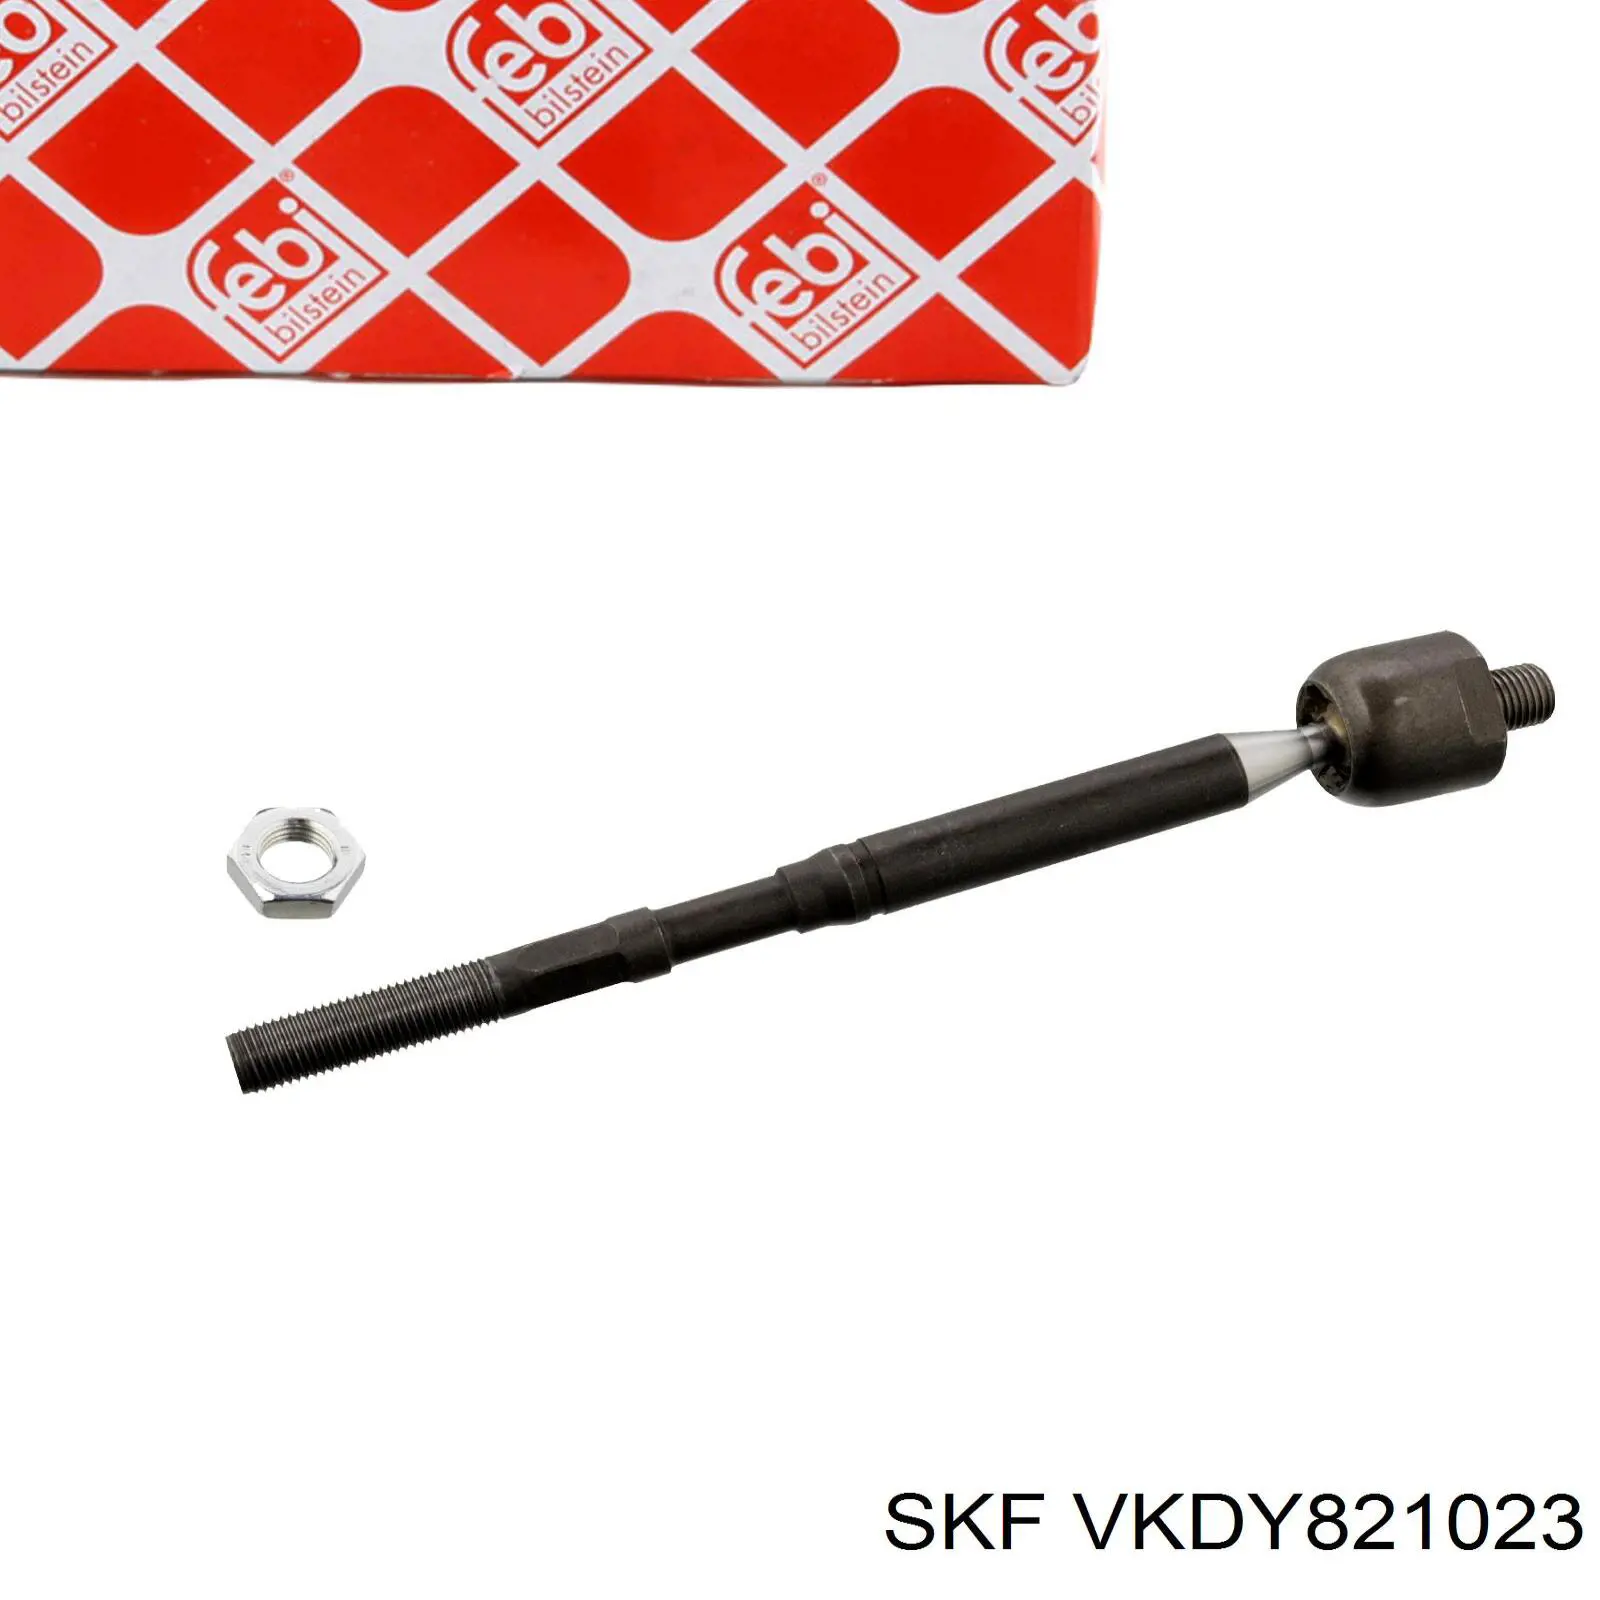 VKDY 821023 SKF barra de acoplamiento